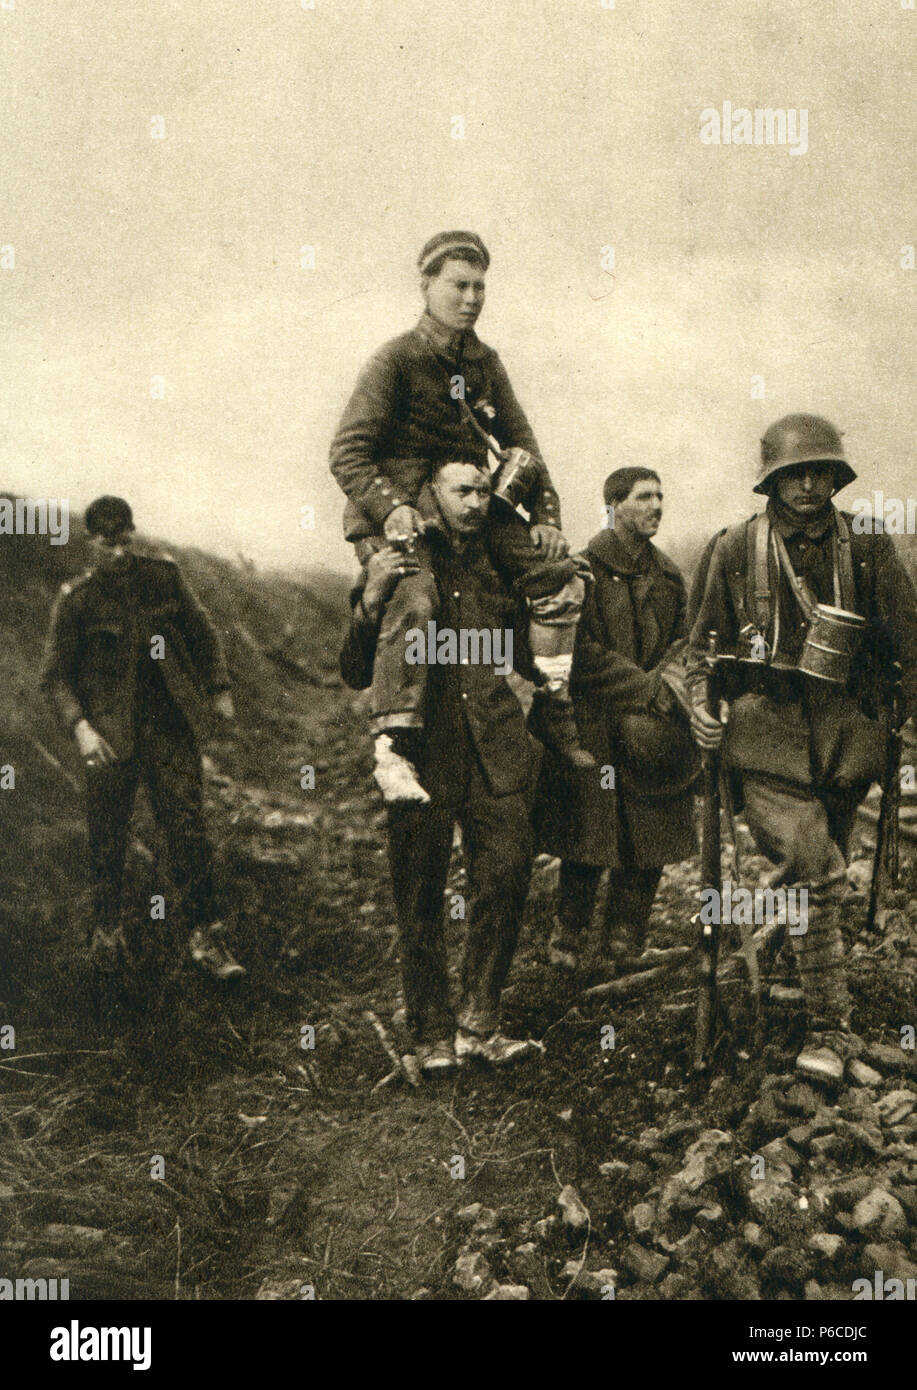 6x4" Reprint Photo British Soldier With German Prisoner of War World War 1